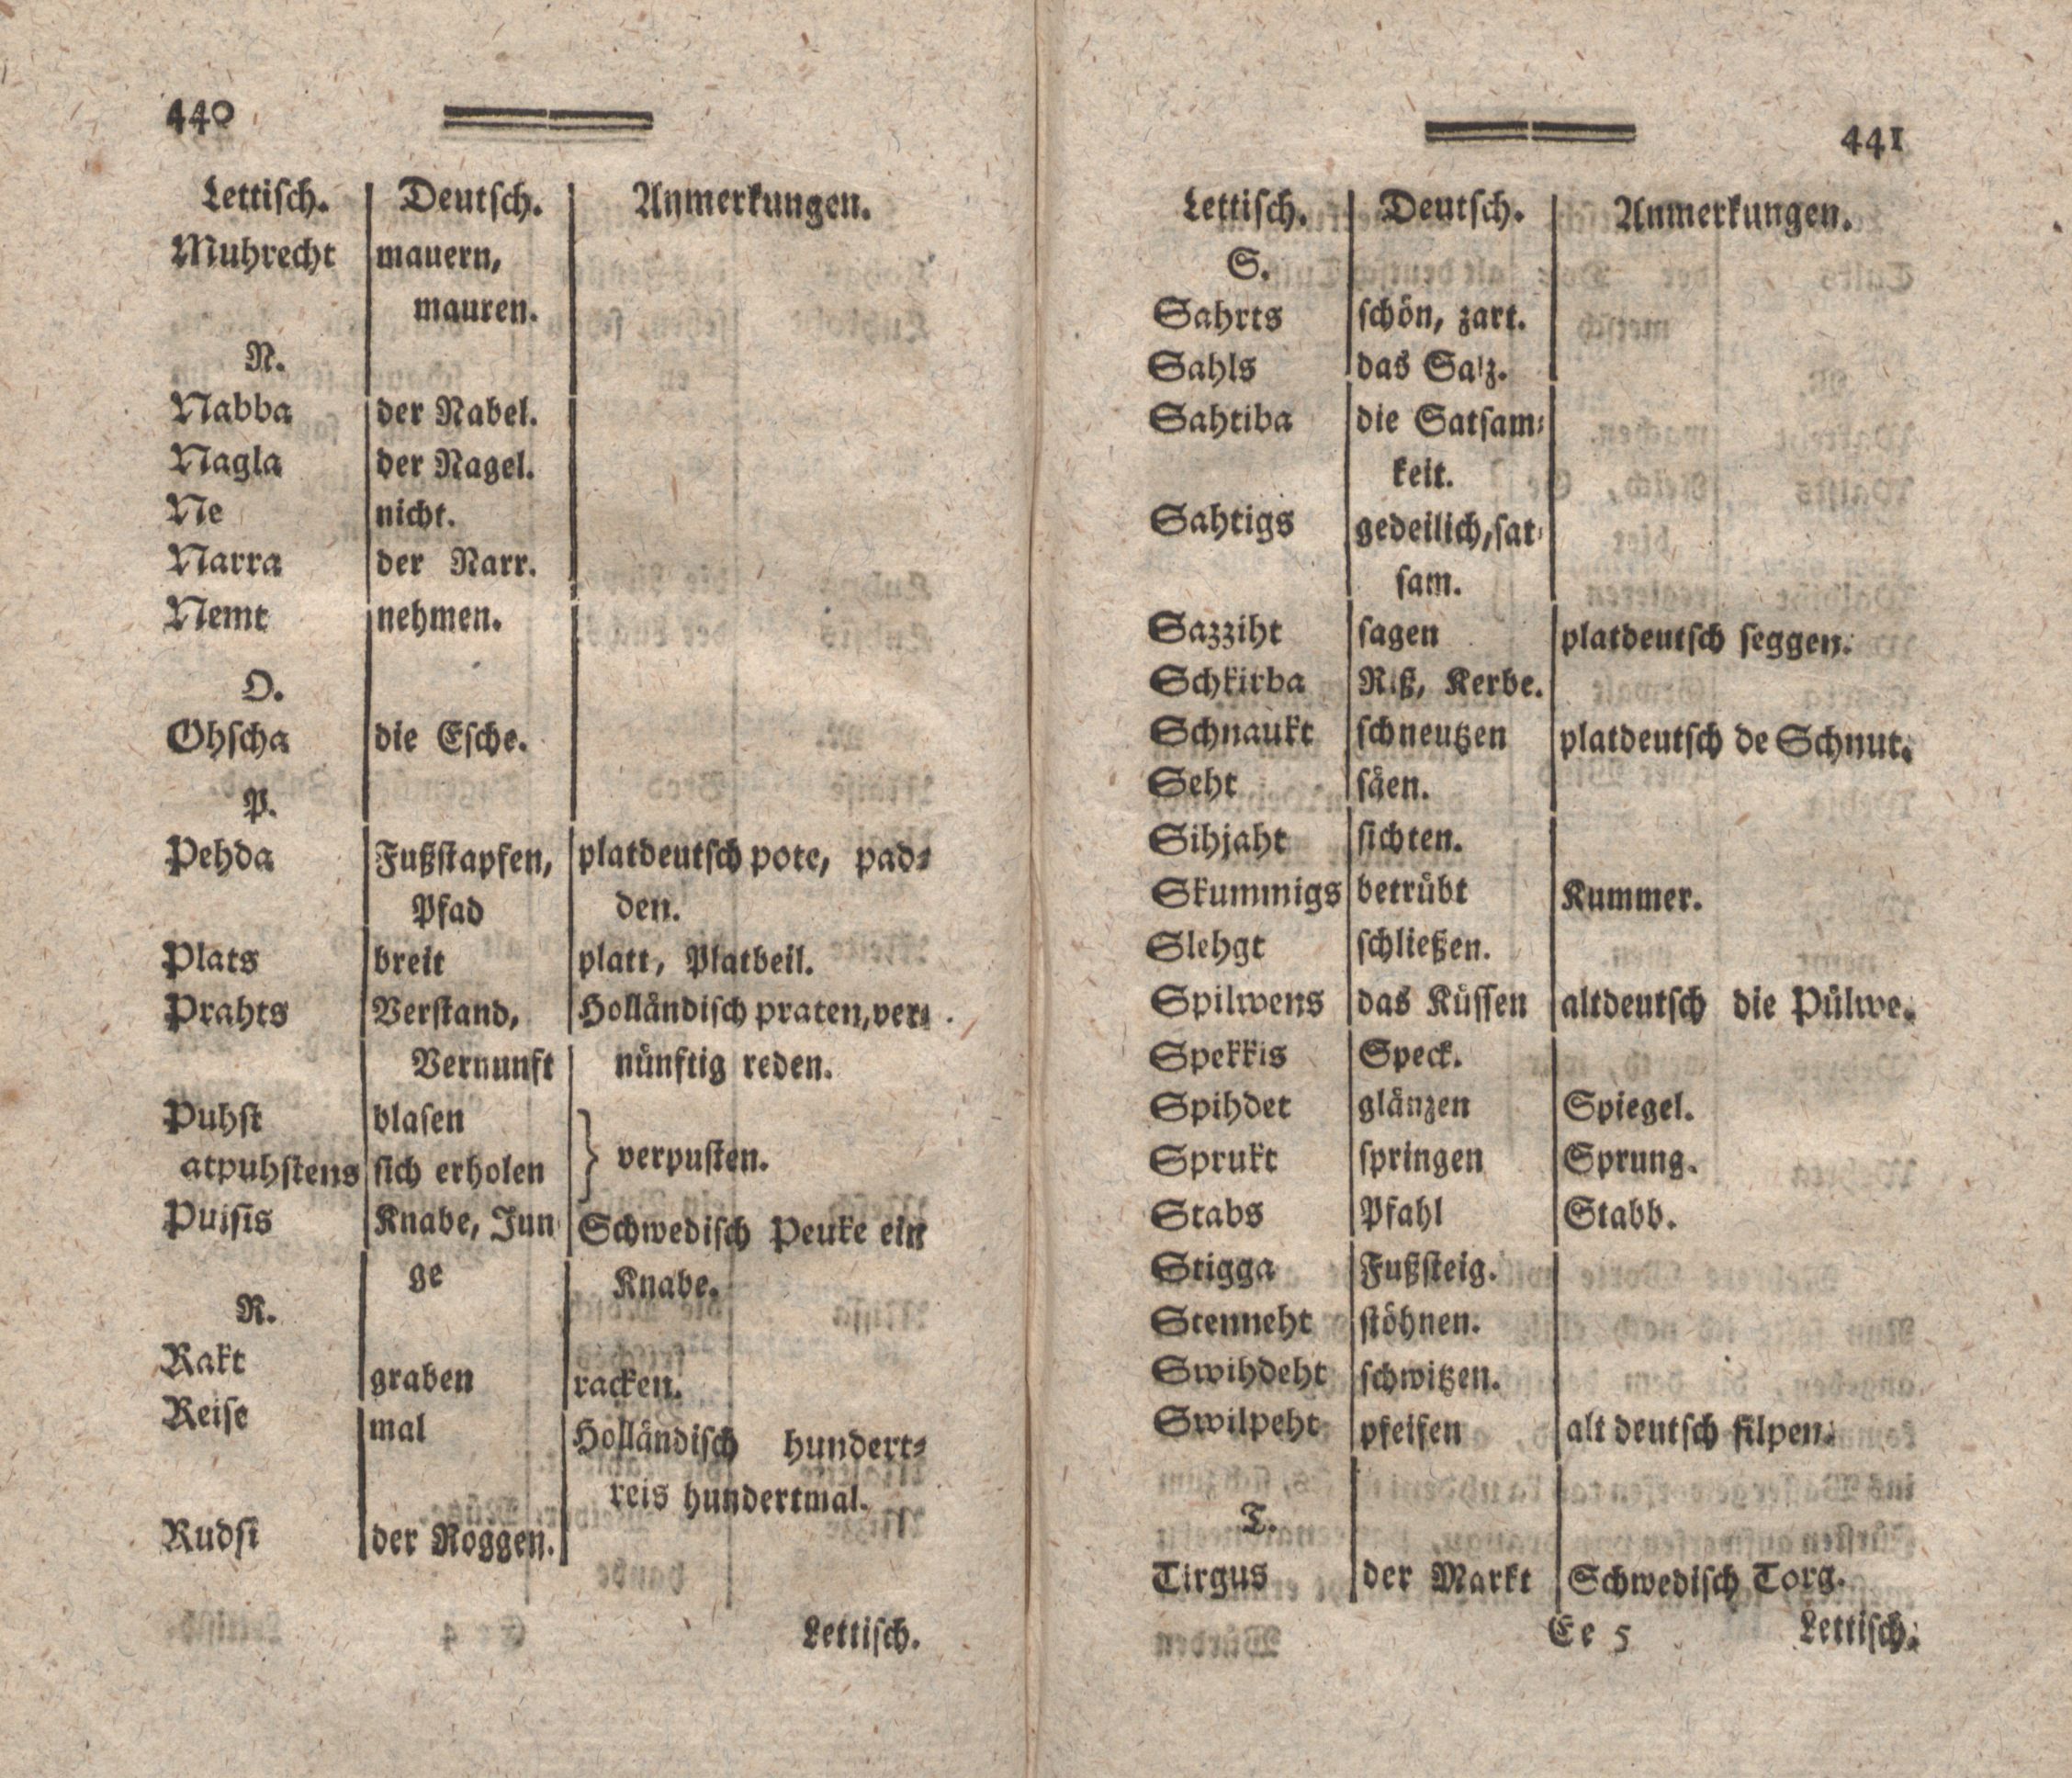 Nordische Miscellaneen [13-14] (1787) | 221. (440-441) Main body of text